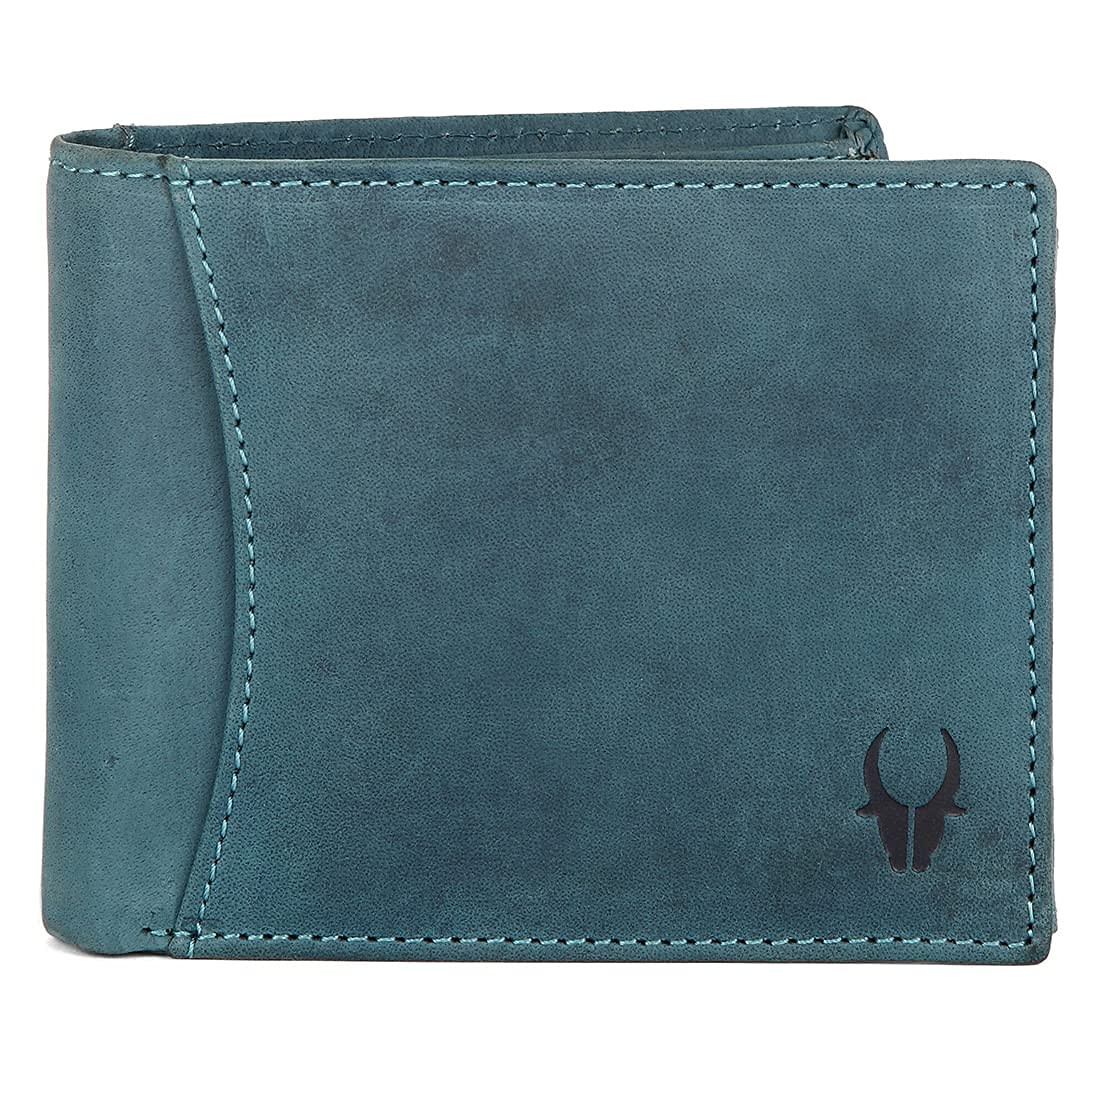 WildHorn Gift Hamper for Men I Leather Wallet & Belt Combo Gift Set I Gift for Friend, Boyfriend,Husband,Father, Son etc (Blue)